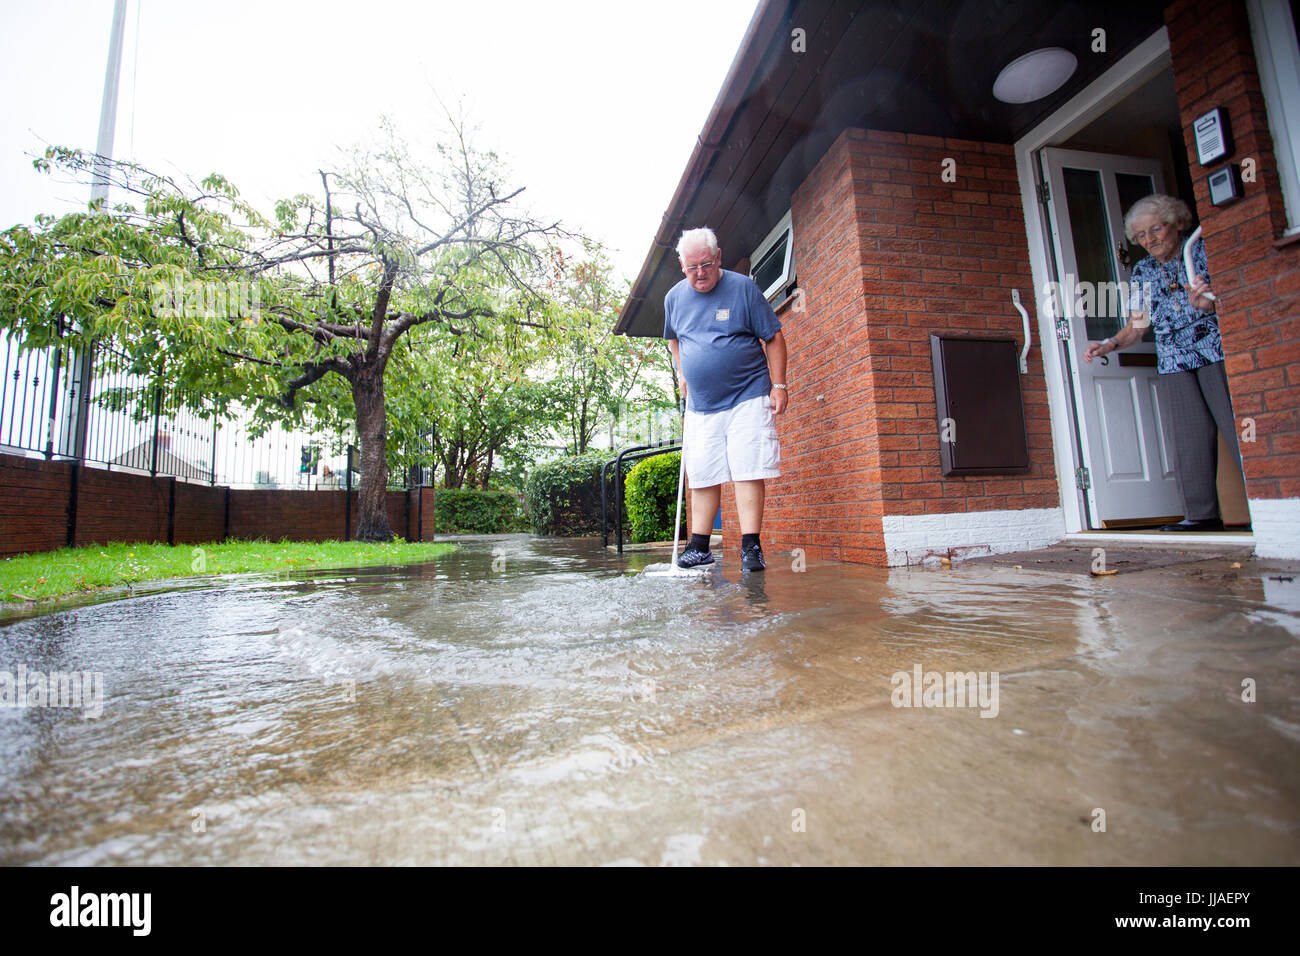 Ältere Person, die versucht, sein Haus durch Bürsten sie von der Haustür entfernt, nach Starkregen Flash-Überschwemmungen in Teilen von Nord-Wales einschließlich Rhyl links Sturzflut Wasser fernhalten Stockfoto